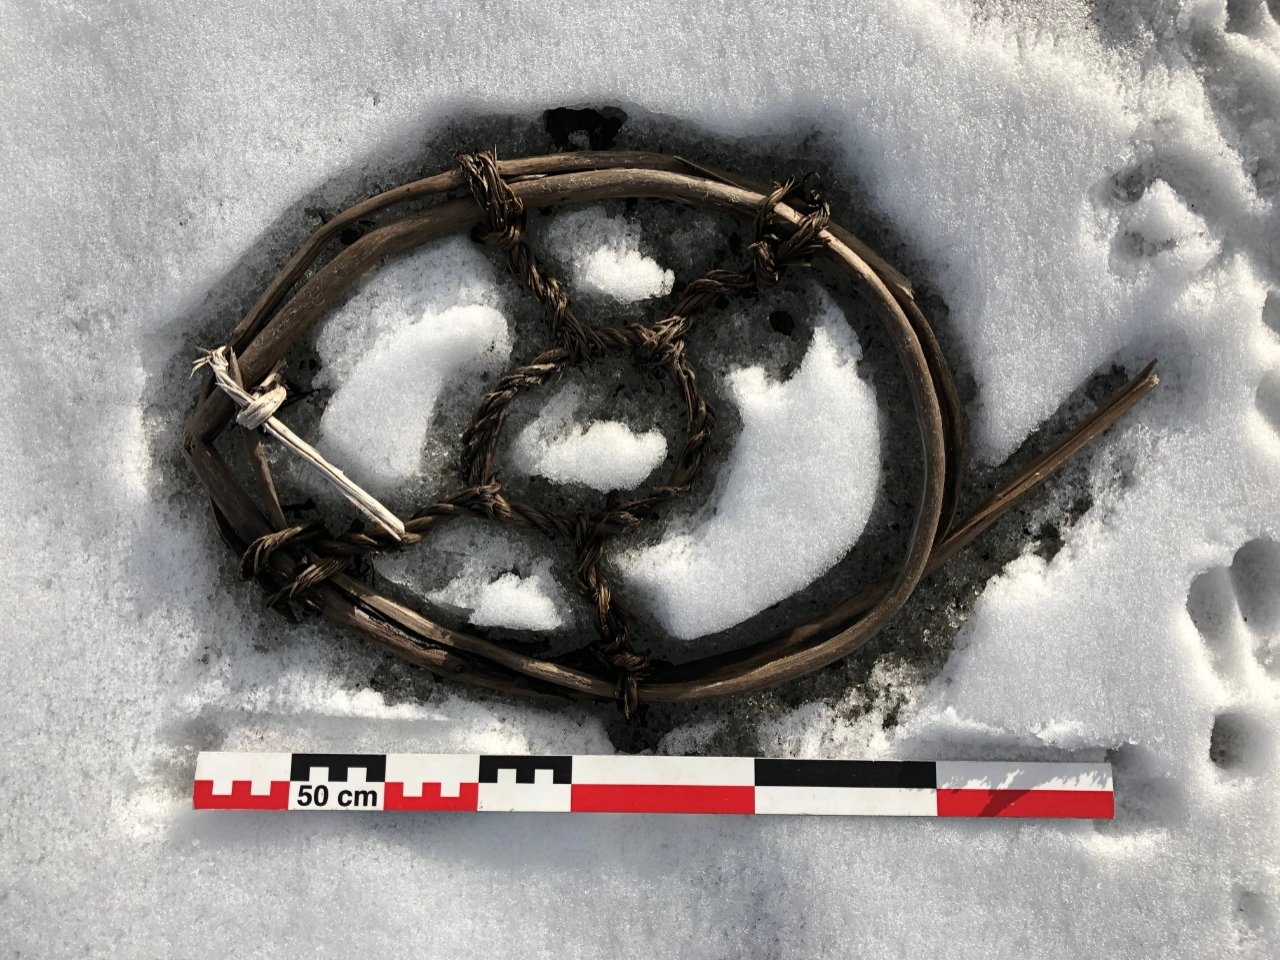 पग्लने बरफले नर्वे 3 मा हराएको वाइकिंग-युग पास र पुरातन कलाकृतिहरू प्रकट गर्दछ